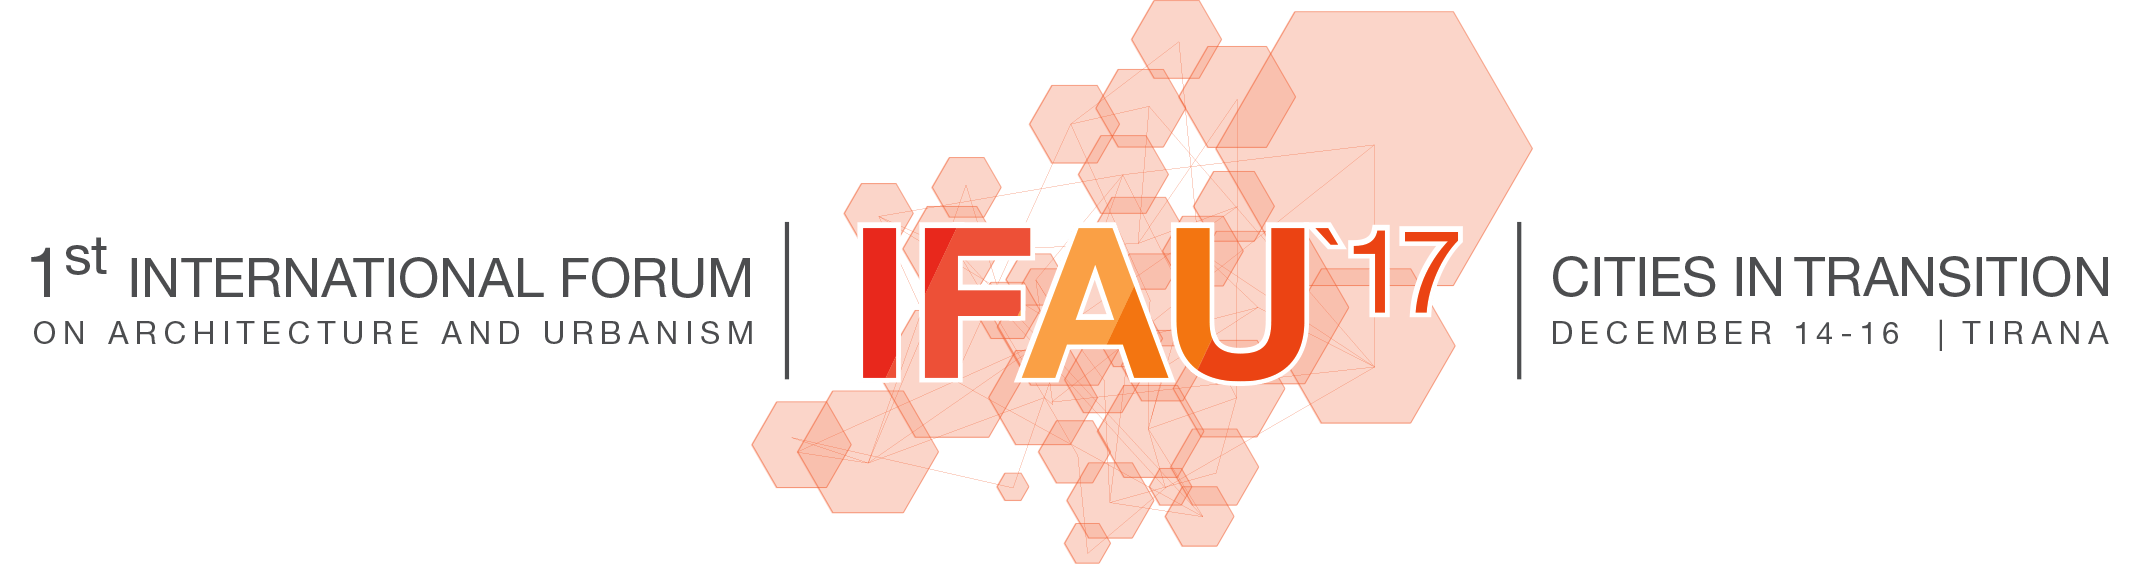 FAU MP Logo - IFAU Tirana 2017